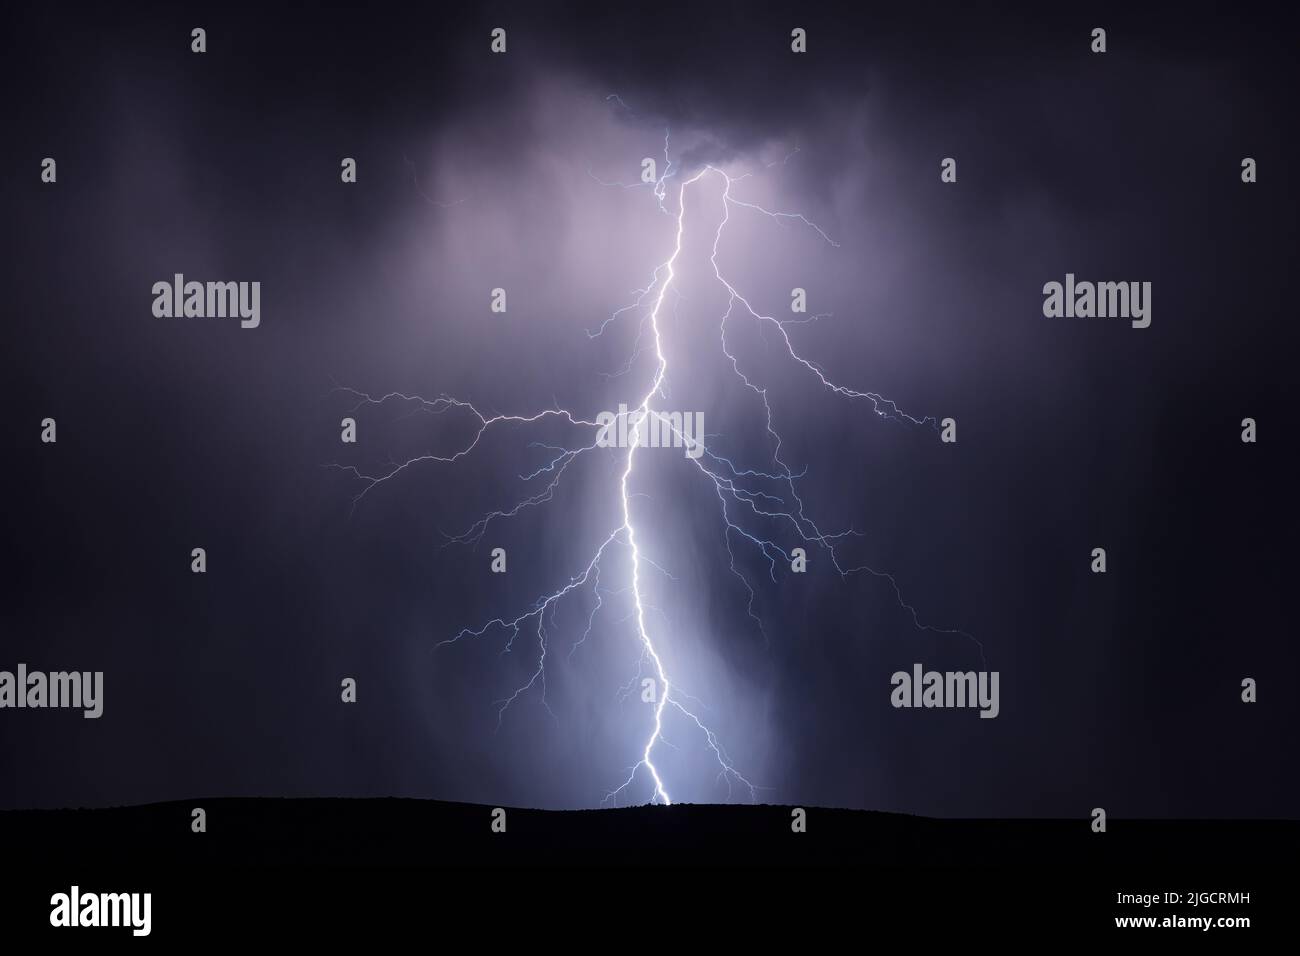 A lightning bolt strikes in a monsoon thunderstorm near Kearny, Arizona Stock Photo